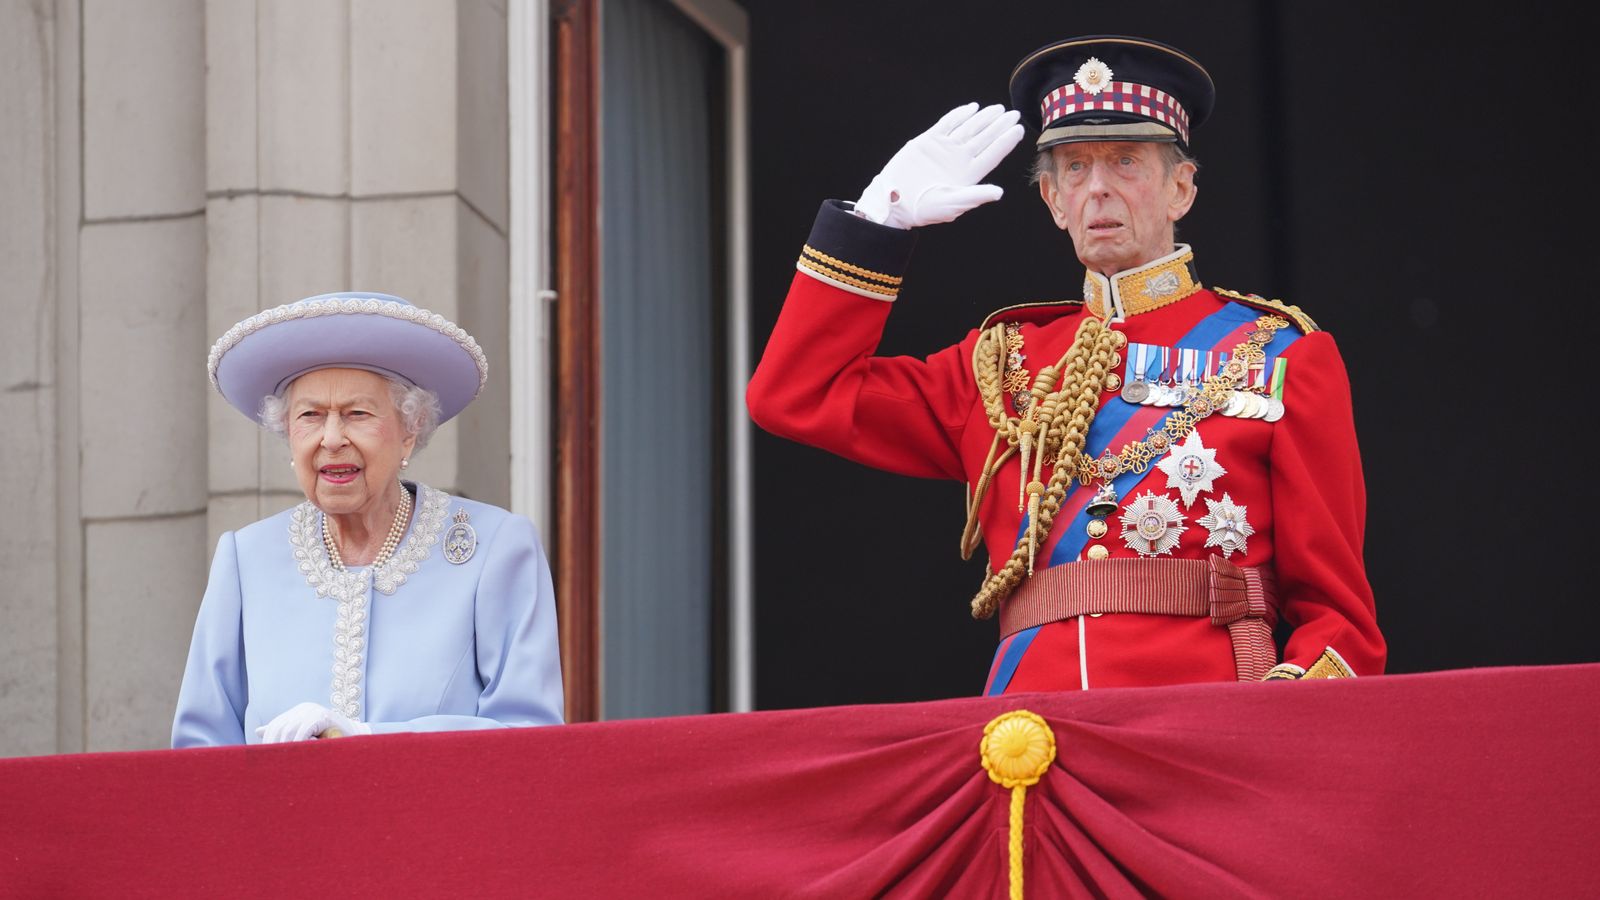 الملكة ودوق كينت في شرفة قصر باكسنغهام يوم الخميس 2 حزيران\ يونيو 2022